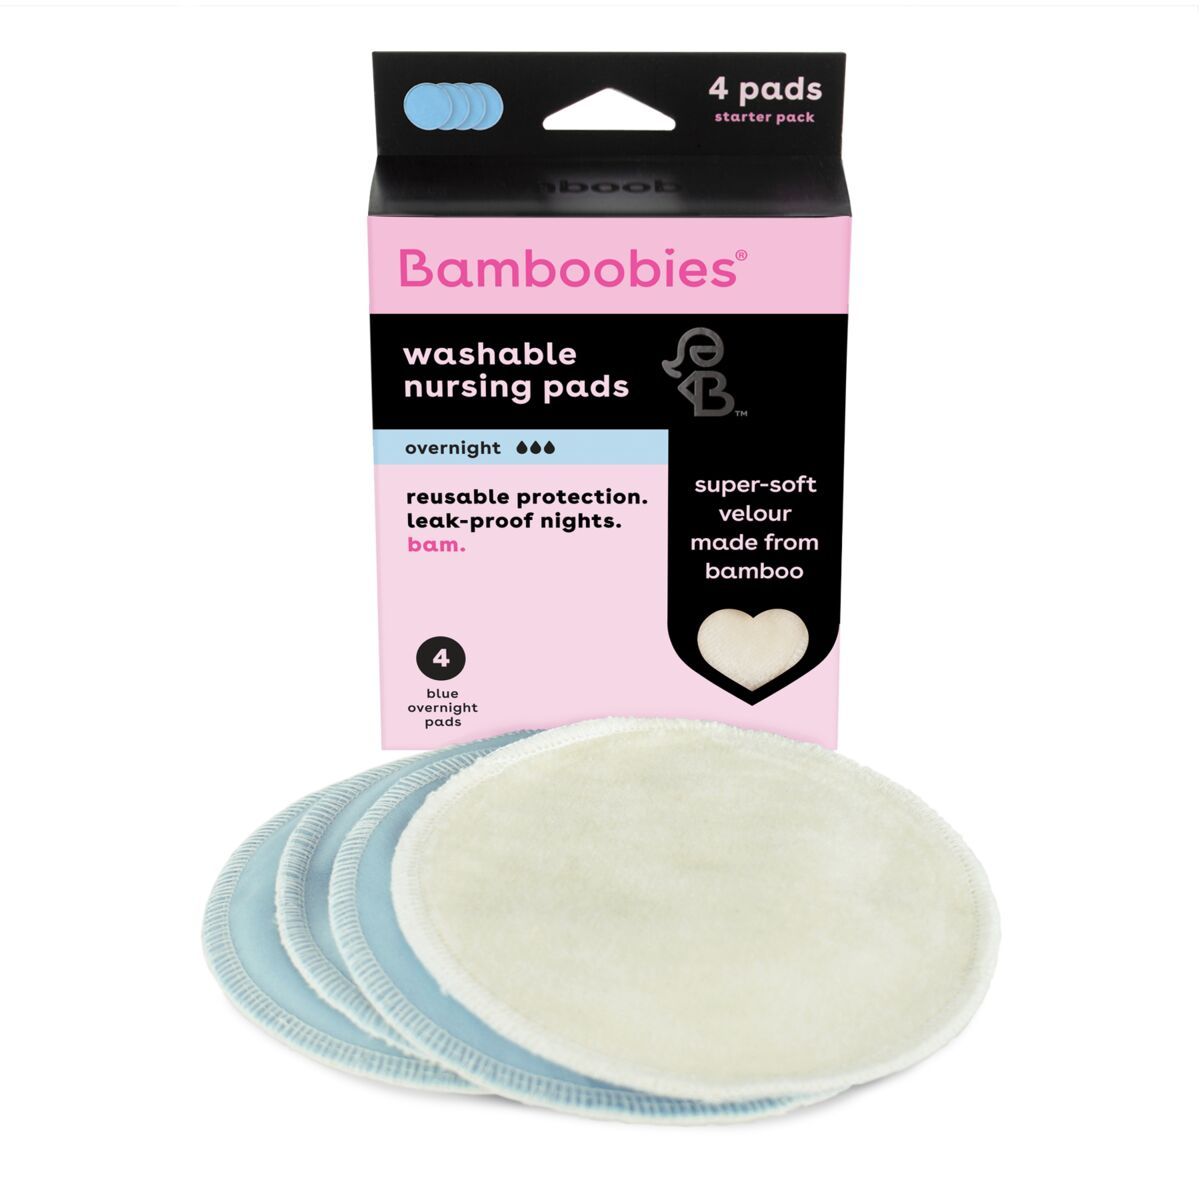 Box of reusable nursing pads, 4 overnight nursing pads